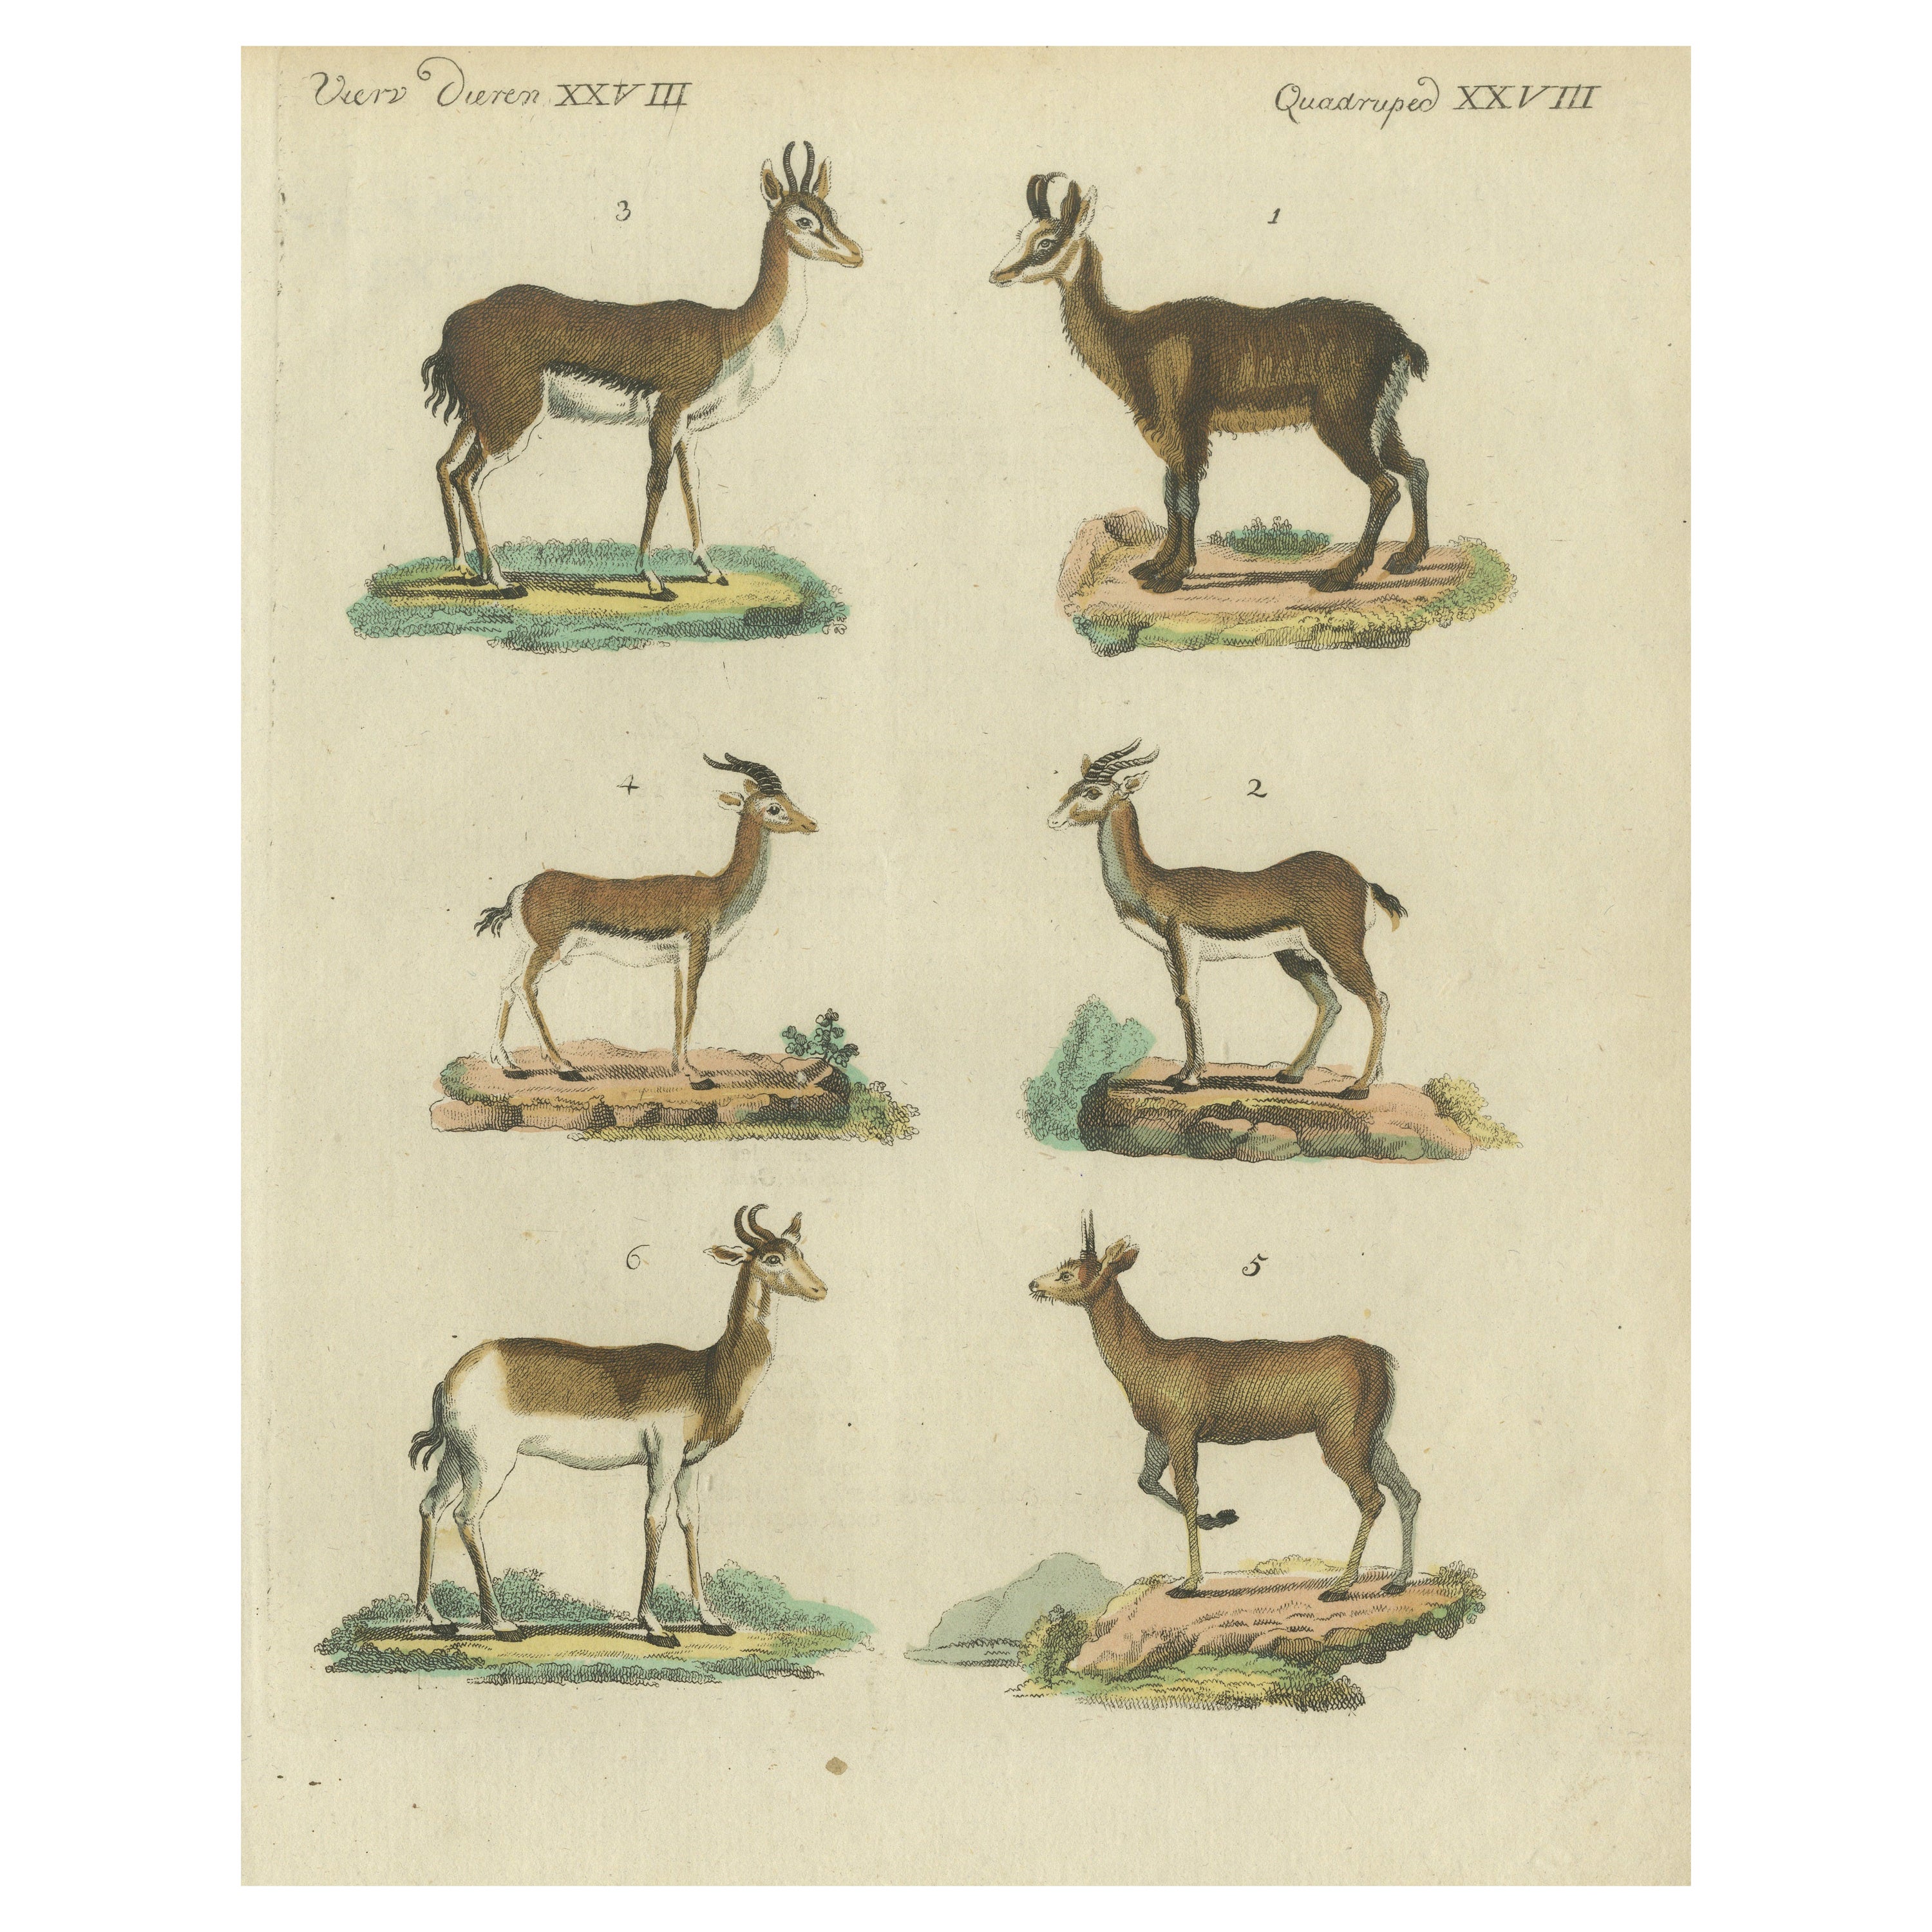 Originaler handkolorierter antiker Druck von diversen Antilopenarten, um 1820